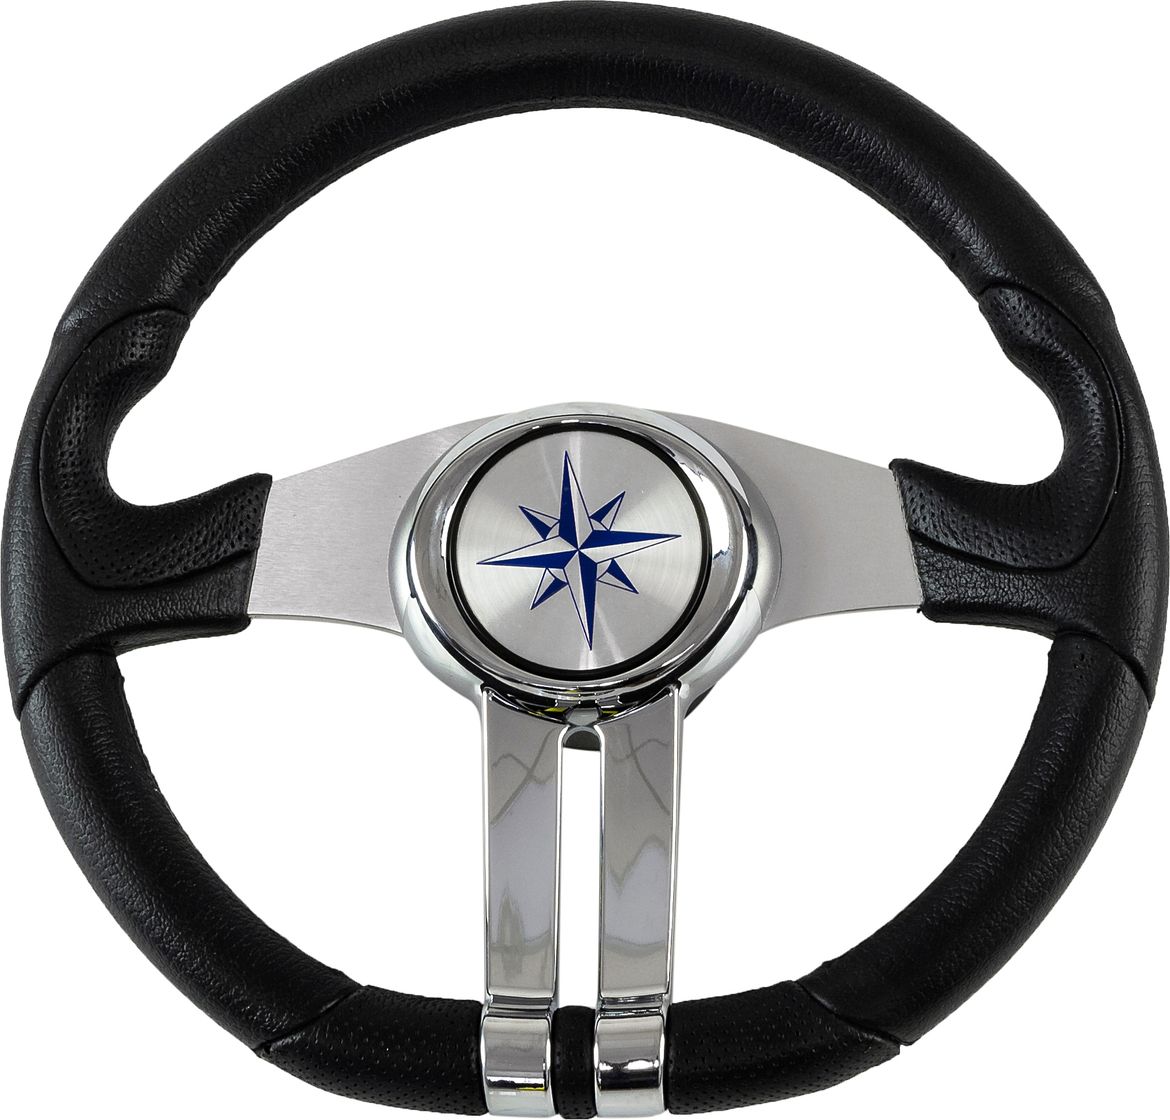 Рулевое колесо BALTIC обод черный, спицы серебряные д. 320 мм VN133203-01 рулевое колесо manta обод белый спицы серебряные д 355 мм vn70551 08